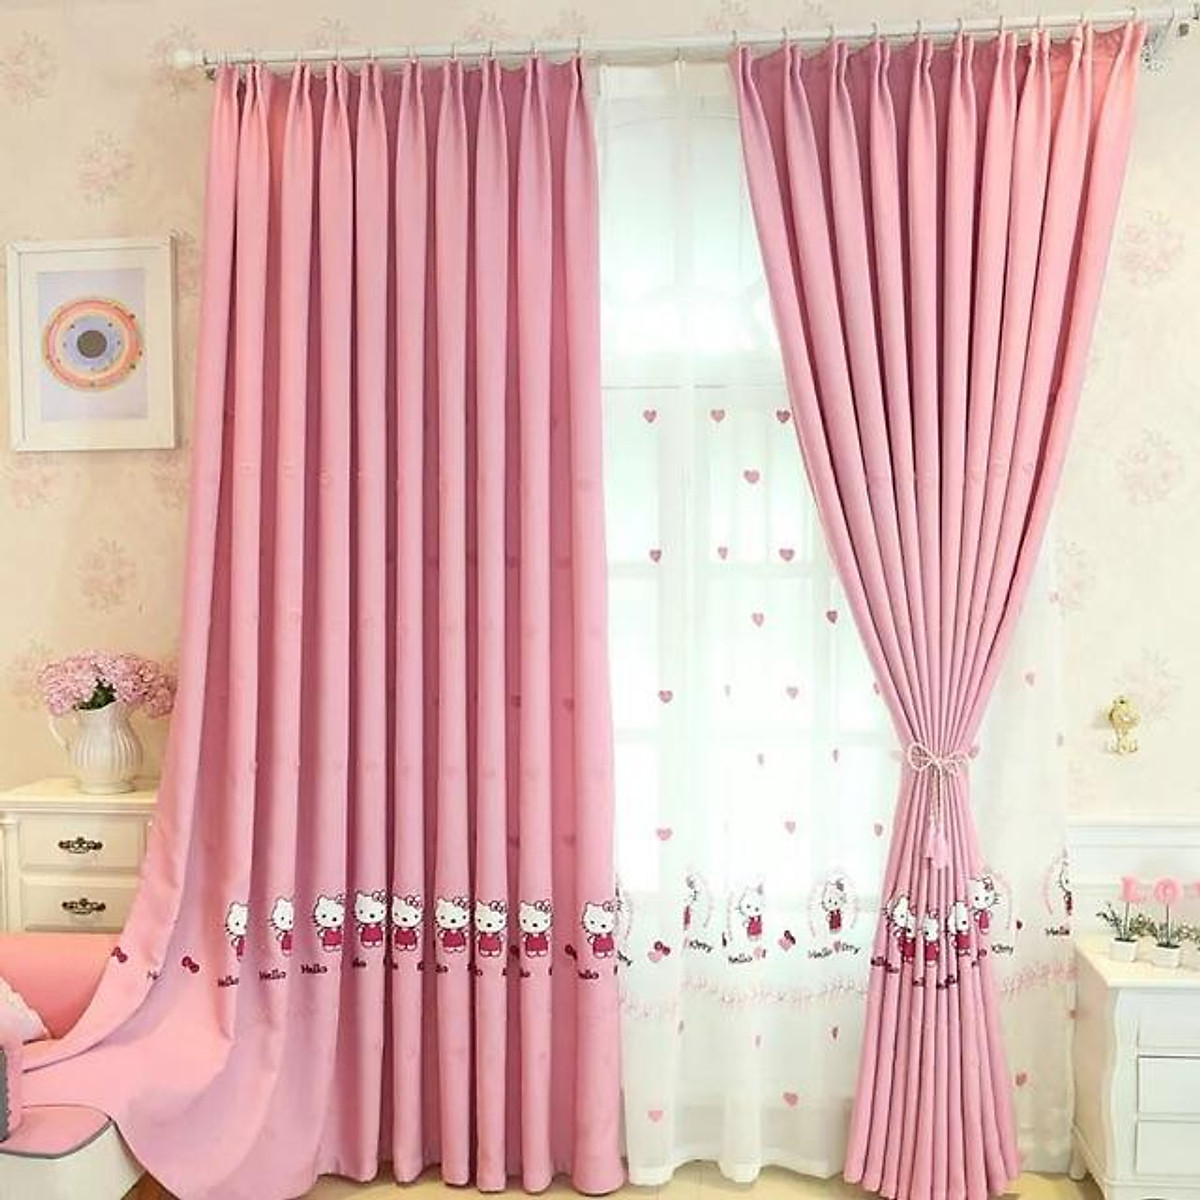 Rèm Thêu Kitty xinh xắn, rèm cửa màu hồng trang trí phòng ngủ trẻ em - Cao cố định 2.2m